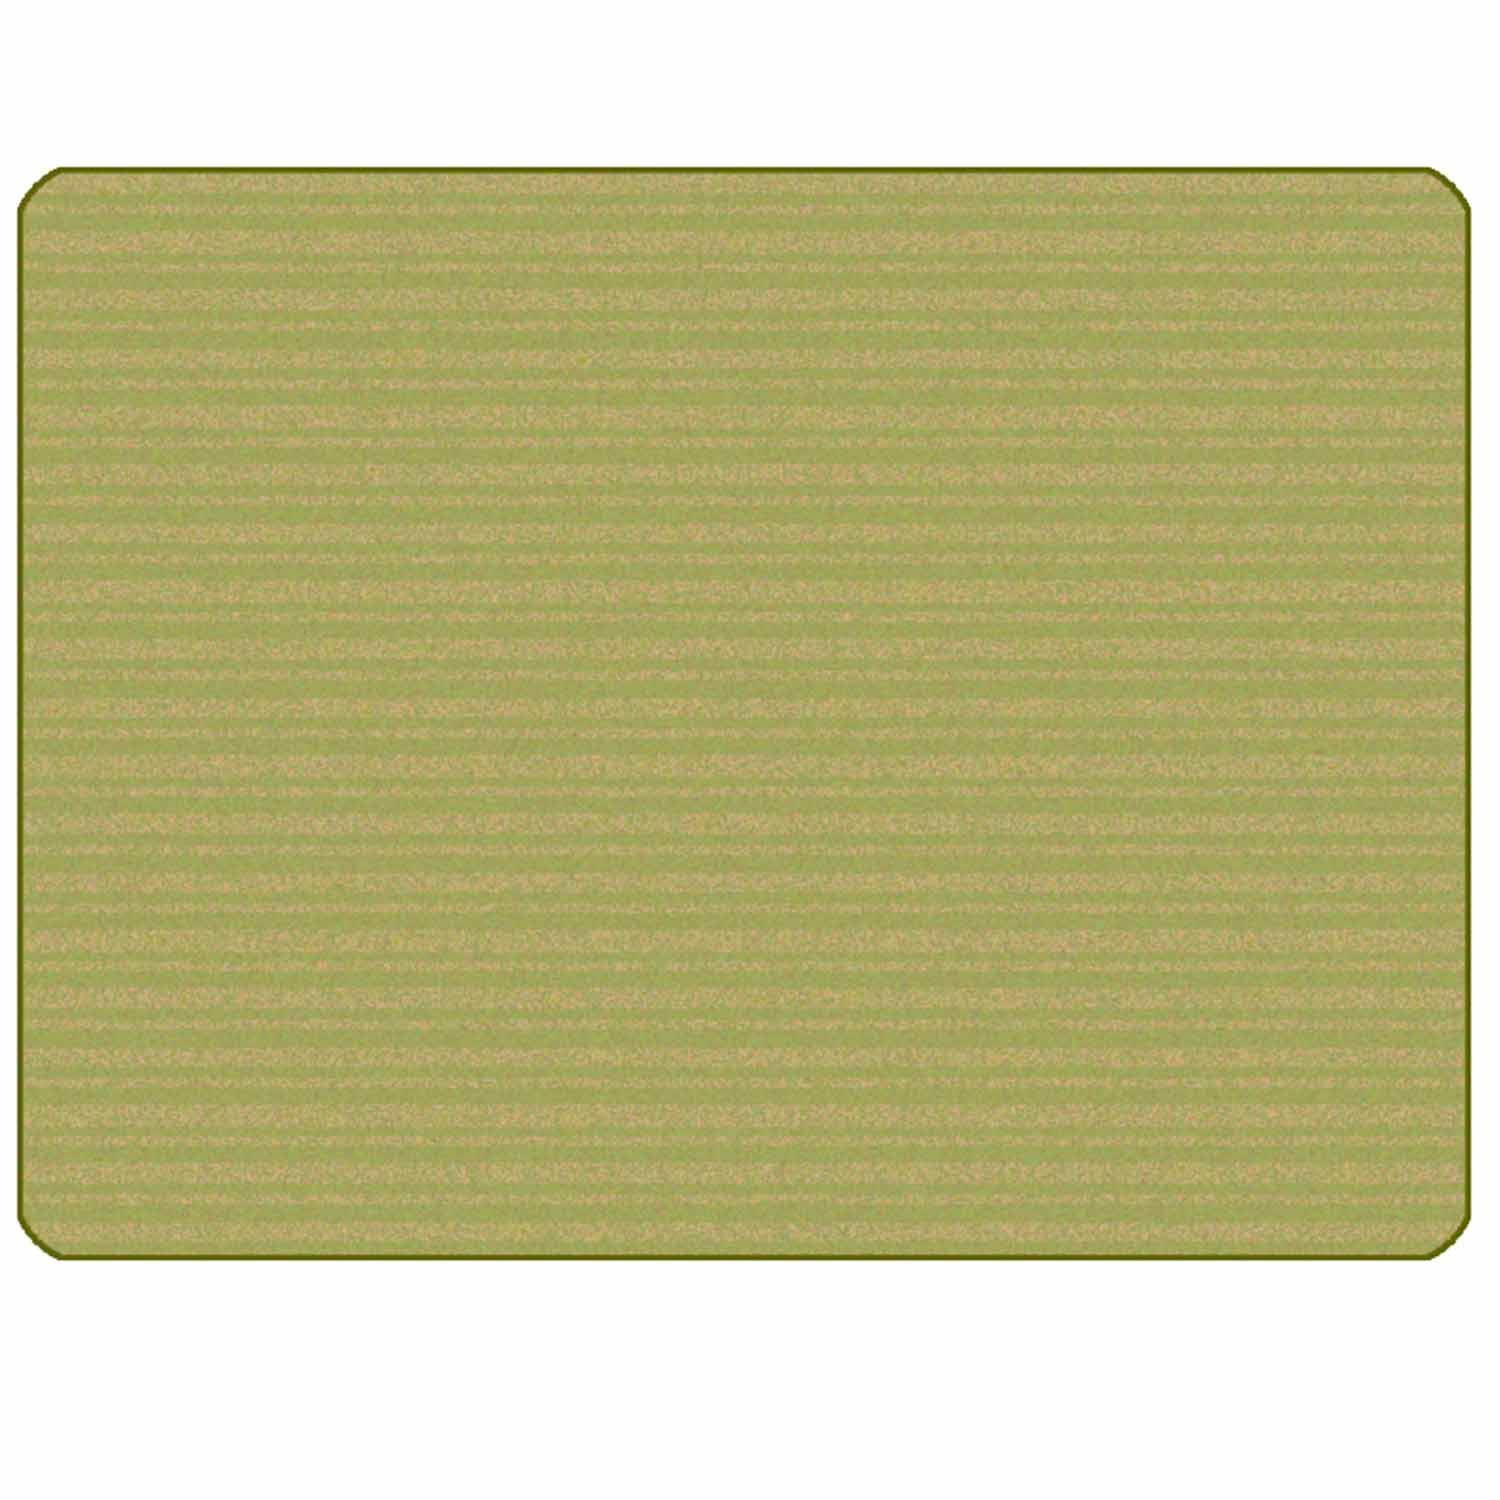 KIDSoft Subtle Stripes Rug Green Tan 4' x 6'